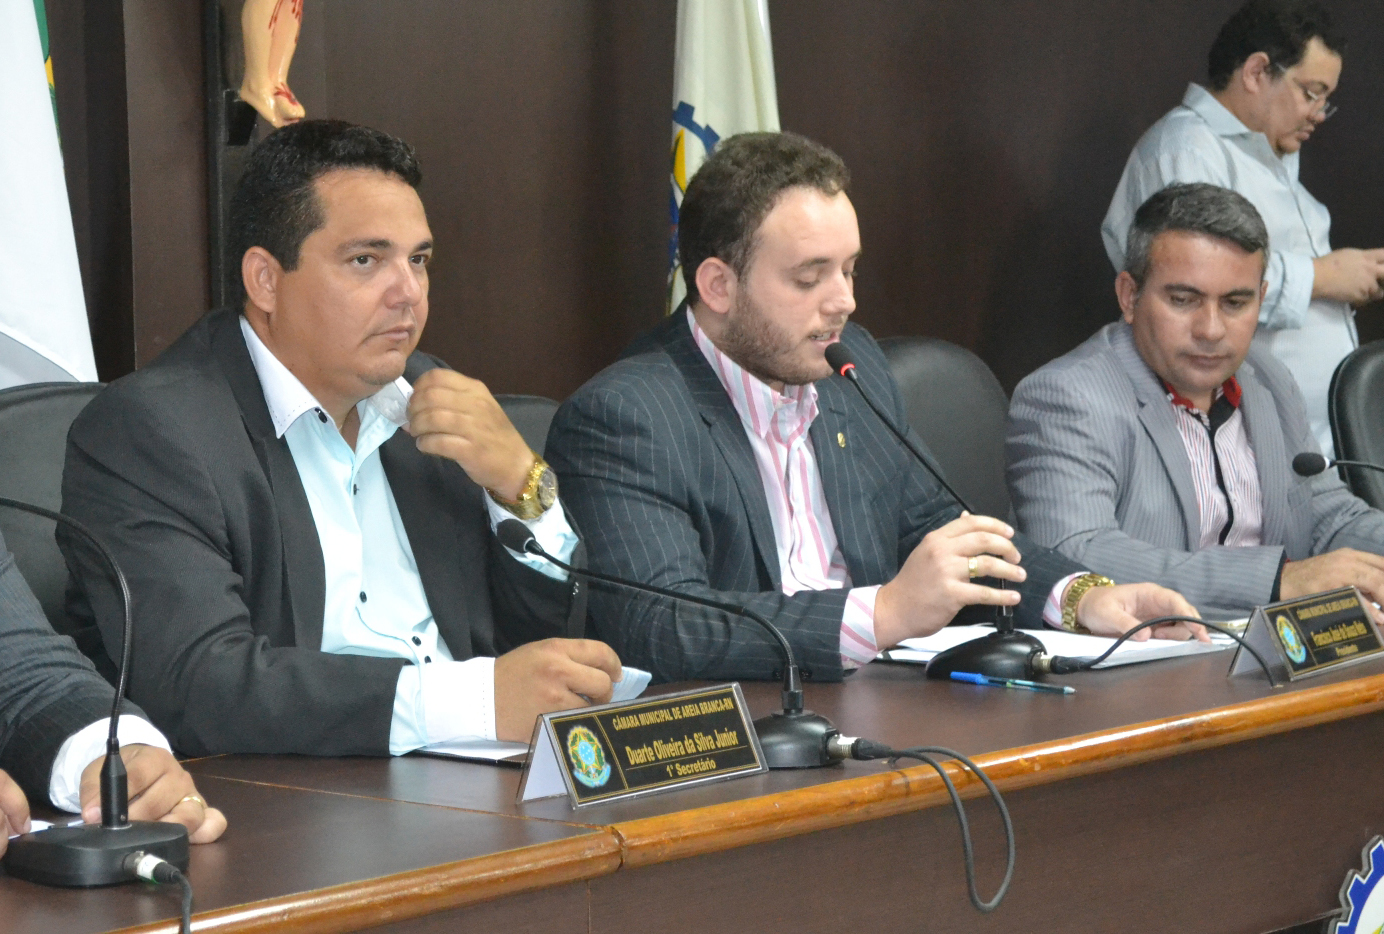 Duarte Júnior (1º secretáiro), “Netinho Cunha” (presidente) e “Tonho da Cohab” (2º secretário) comandam os trabalhos da Casa (Foto: Erivan Silva)